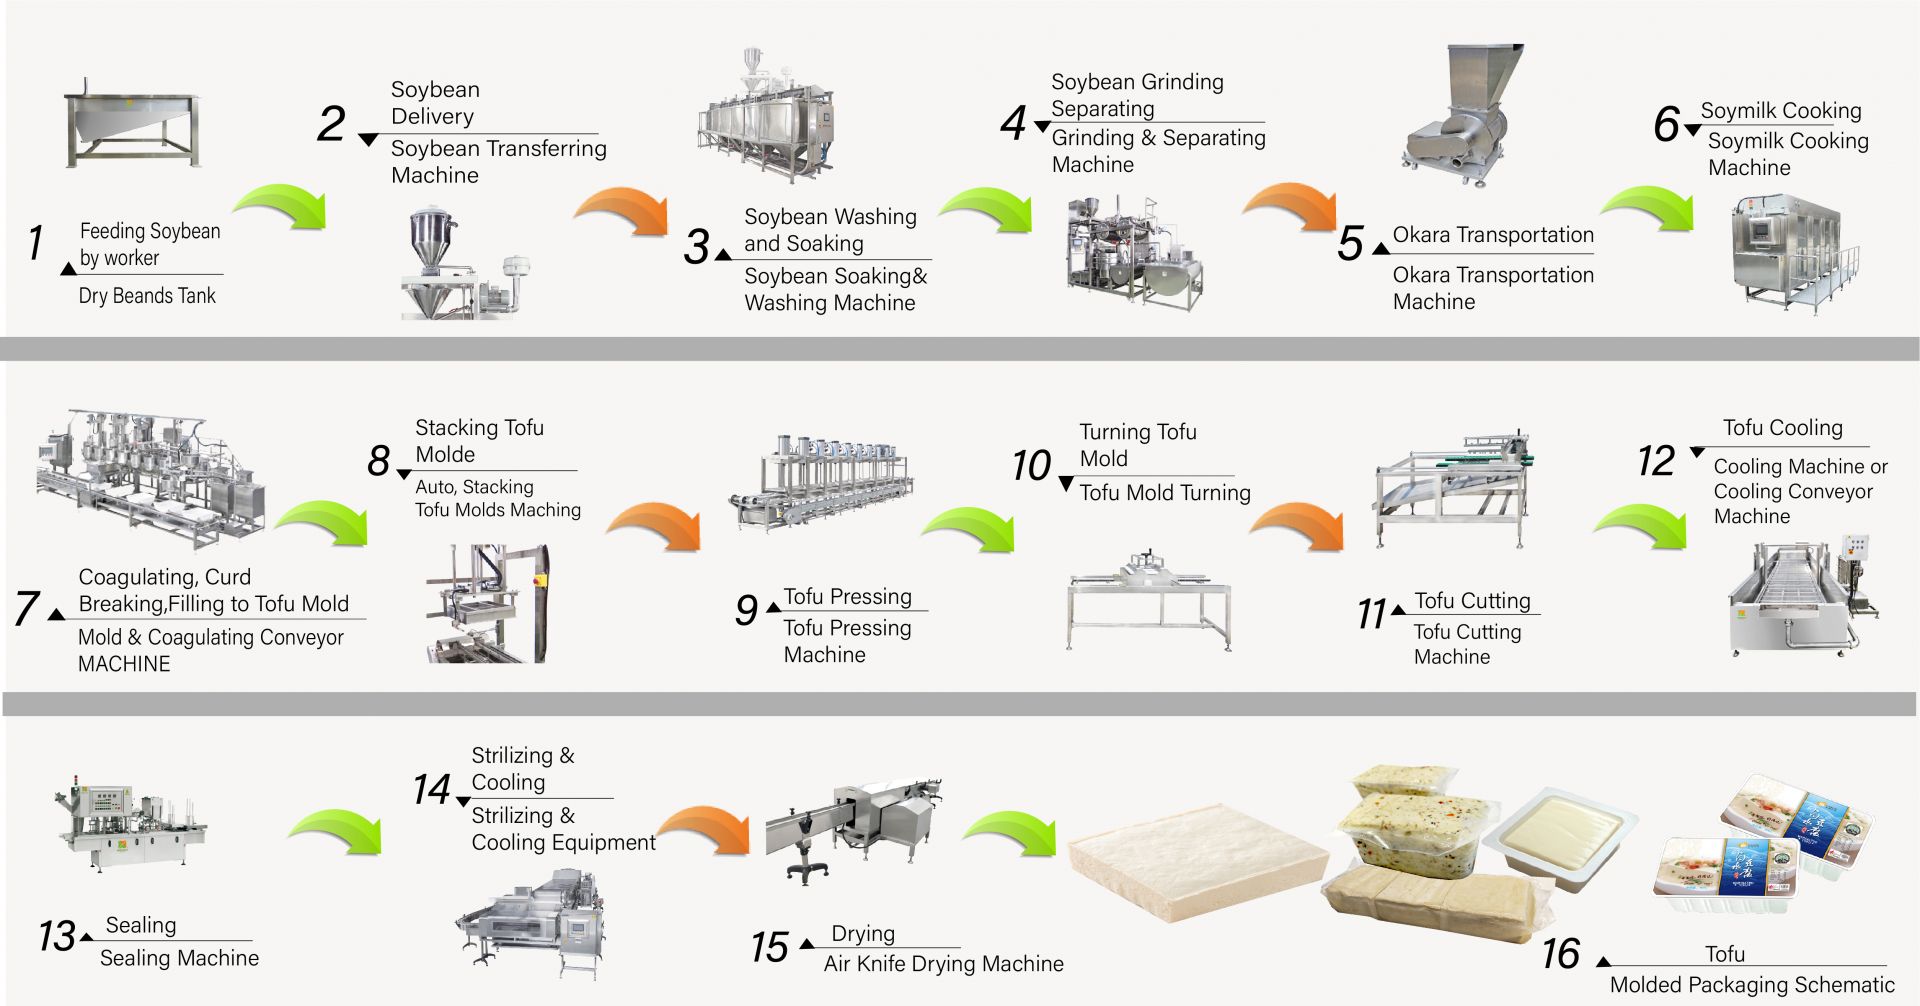 Як зробити тофу, виробництво тофу, Виготовлення тофу, Процес виготовлення тофу, Виробництво тофу, Процес виробництва тофу, Процес тофу, Метод обробки тофу, Процес обробки тофу, Виробництво тофу, діаграма виробництва тофу, процес виробництва тофу, Процес виробництва тофу, автоматичний пристрій для виробництва тофу, Автоматичний виробник тофу, Комерційний пристрій для виробництва тофу, Простий виробник тофу, Пристрій для смаження тофу, Промислове виробництво тофу, Обладнання для сої, машини для виробництва соєвого м'яса, машини для виробництва соєвого молока та тофу, обладнання для виробництва тофу, завод з виробництва тофу, машина для виробництва тофу, машина для виробництва тофу на продаж, виробник машин для виробництва тофу, виробник машин для виробництва тофу, ціна машин для виробництва тофу, машини для виробництва тофу, Обладнання та устаткування для виробництва тофу, Виробник тофу, машина для виготовлення тофу, Виготовлення тофу, устаткування для виготовлення тофу, машина для виготовлення тофу, ціна на машину для виготовлення тофу, виробники тофу, Виробництво тофу, устаткування для виробництва тофу, Завод з виробництва тофу, завод з виробництва тофу, обладнання для виробництва тофу, завод з виробництва тофу, лінія виробництва тофу, ціна на лінію виробництва тофу, виробник тофу, машина для веганського м'яса, лінія виробництва веганського м'яса, овочеве обладнання та устаткування для виробництва тофу